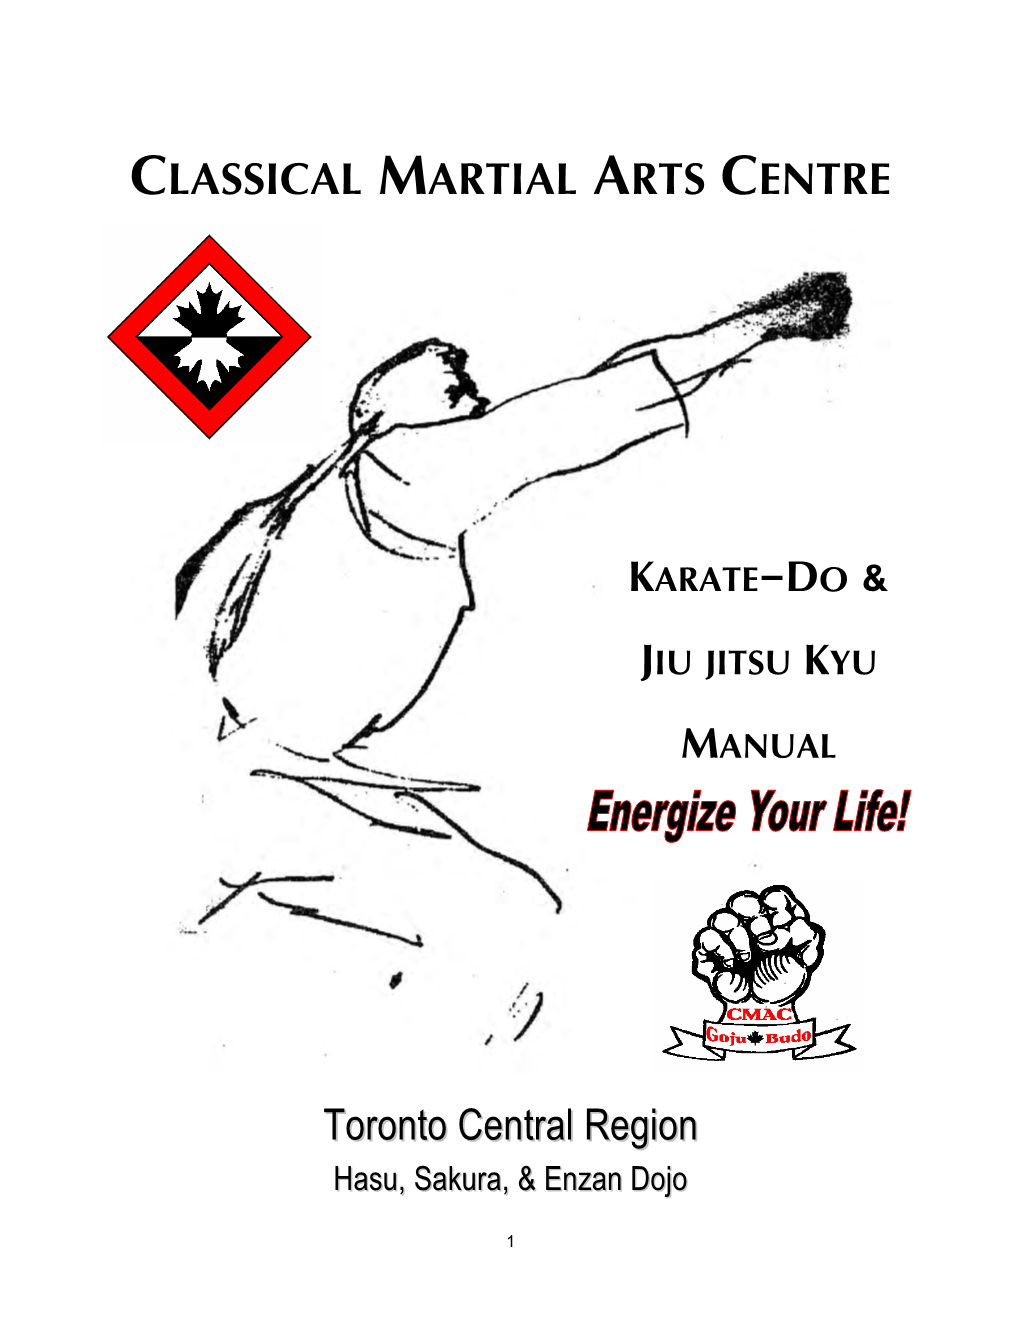 Karate-Do & Jiu Jitsu Kyu Manual